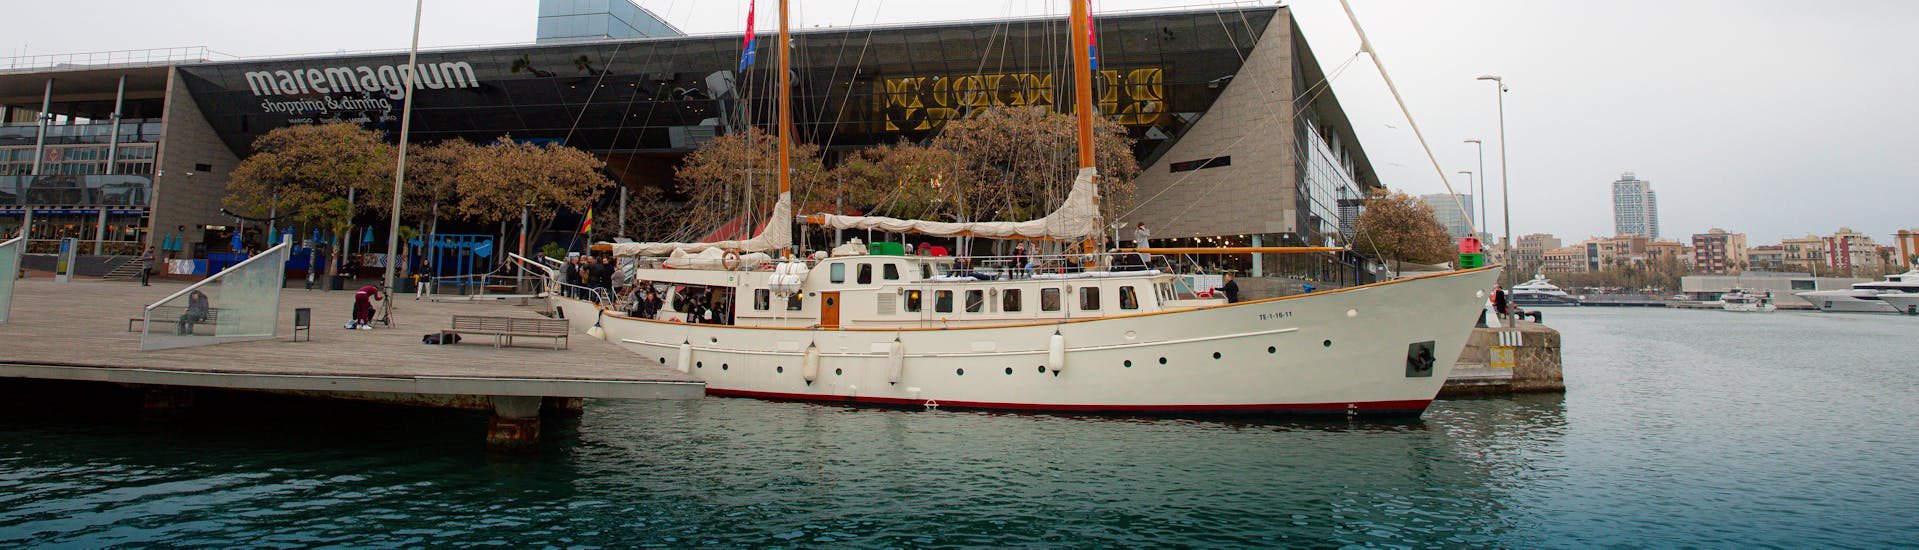 Barco histórico de los años 60 iniciando un viaje en barco para una actividad con el velero histórico Gotland Charter.